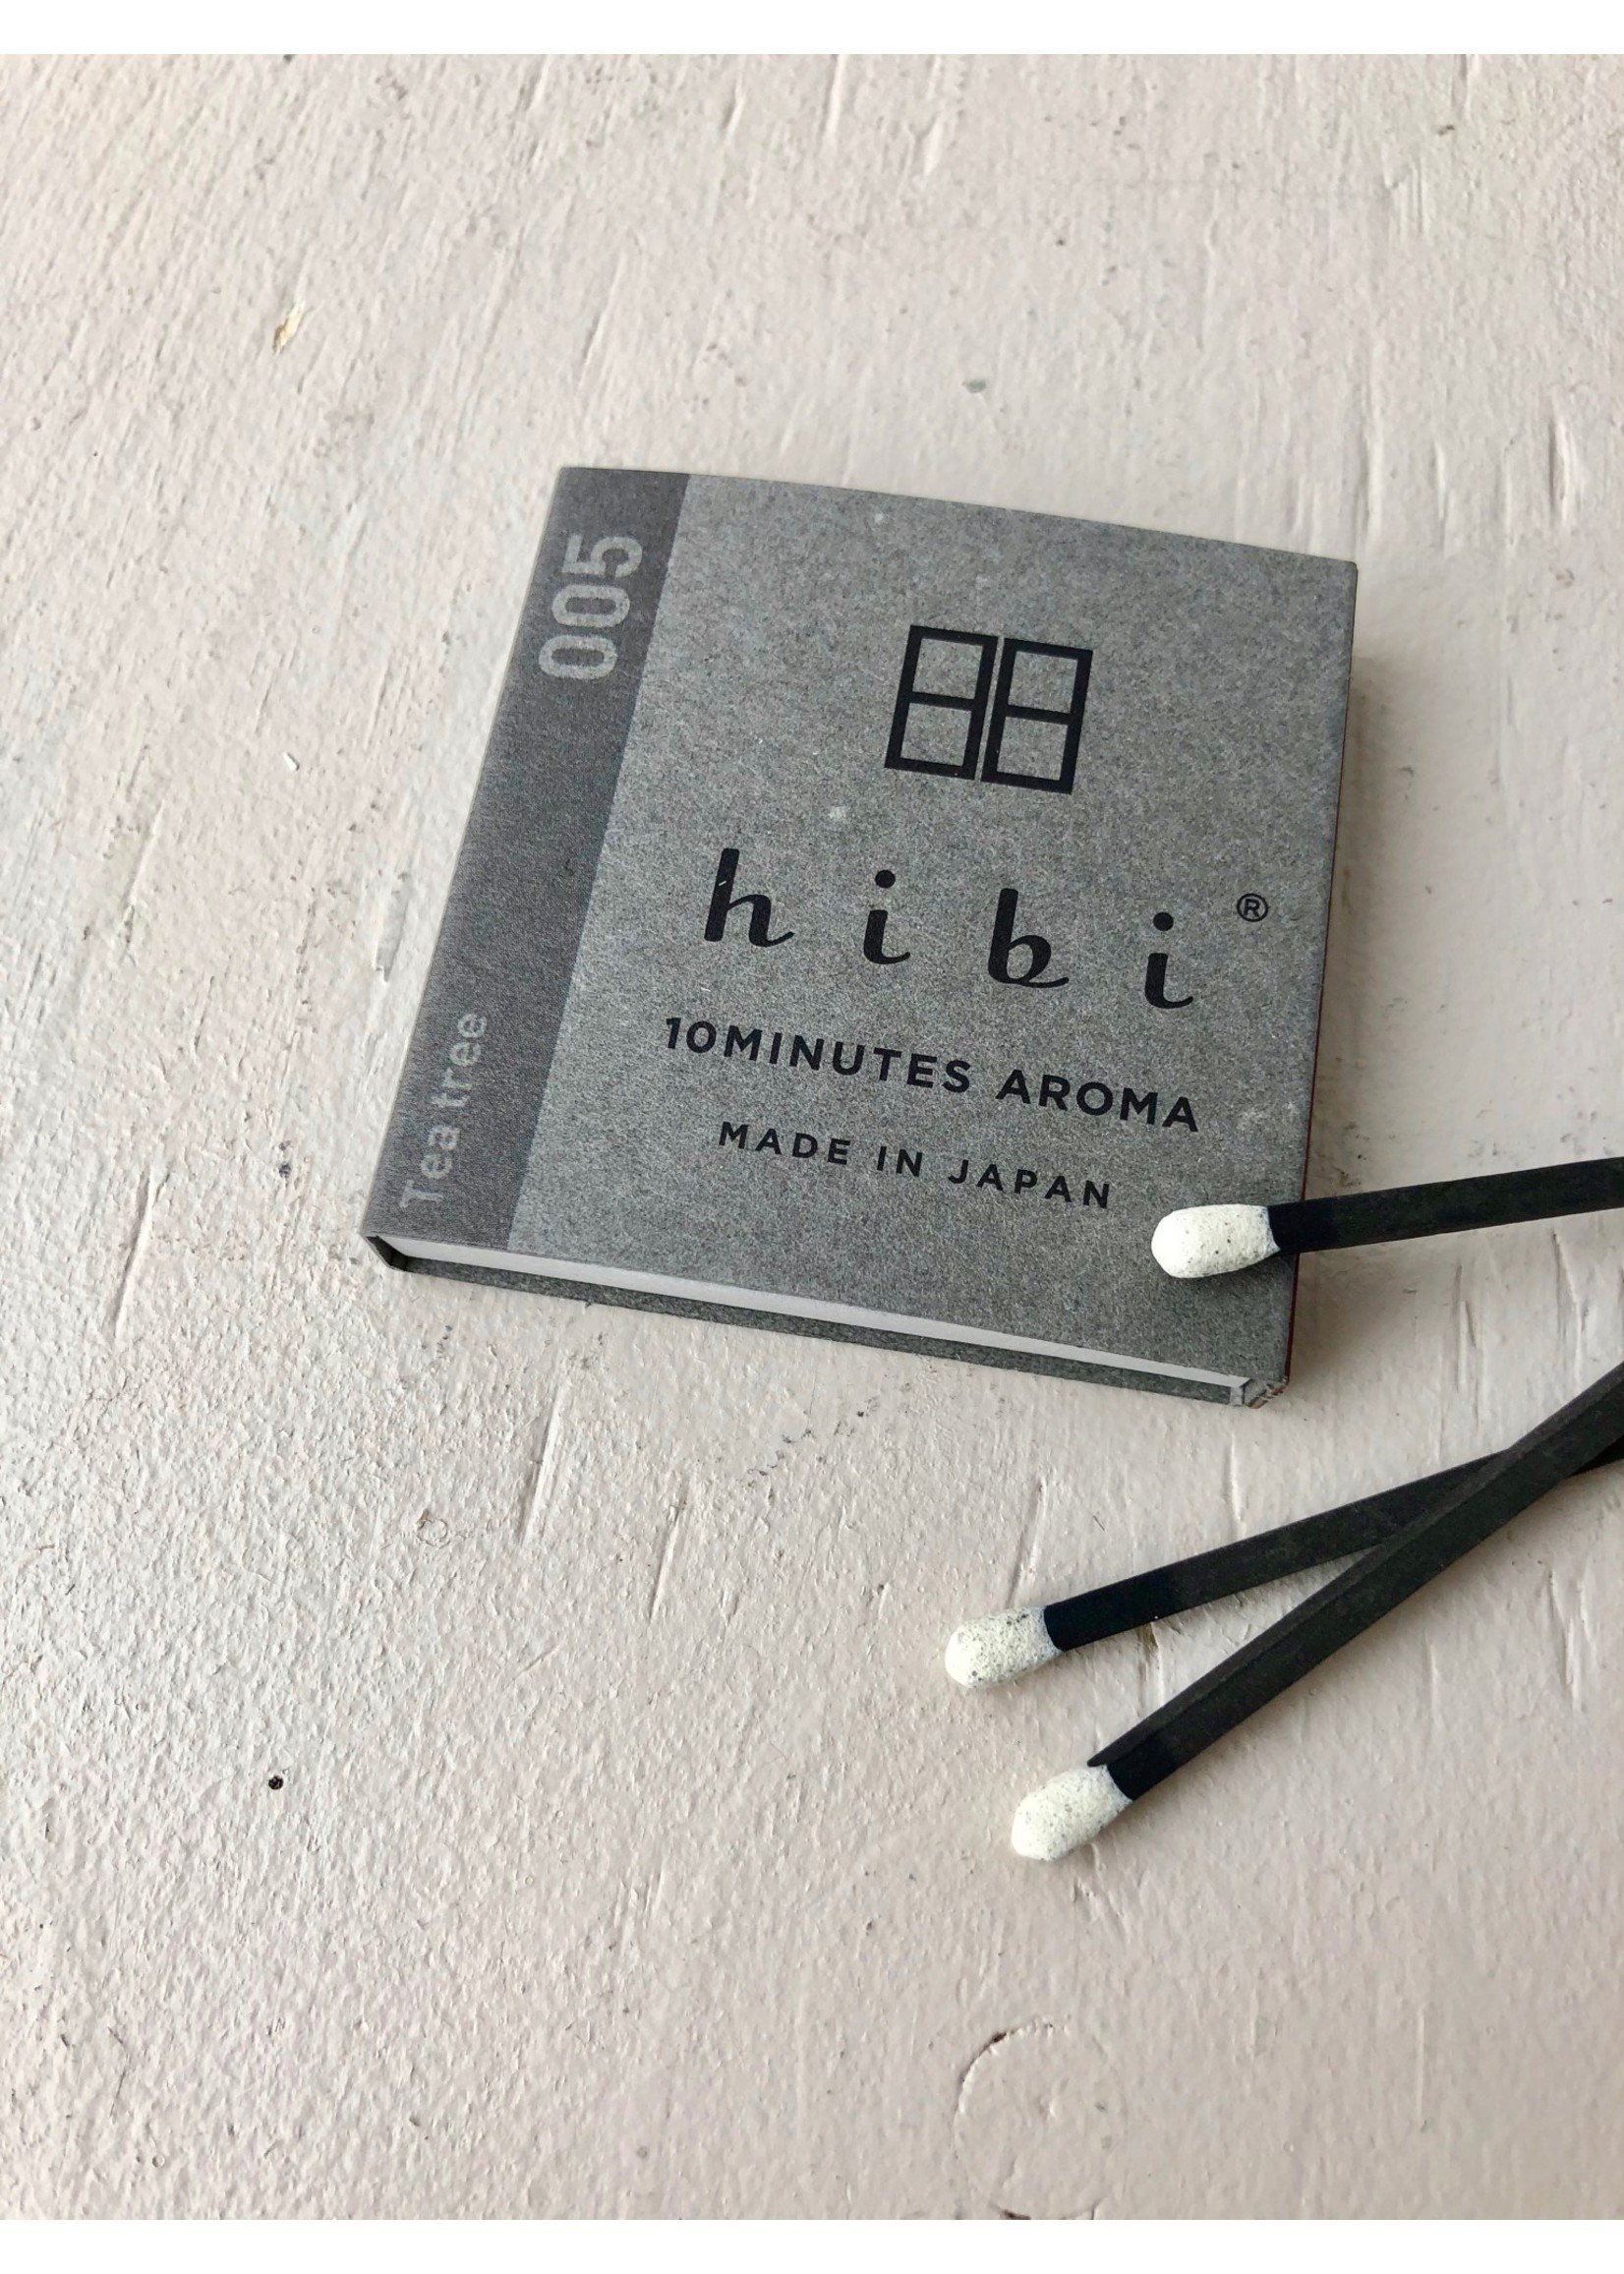 Hibi Incense Matches by HIBI